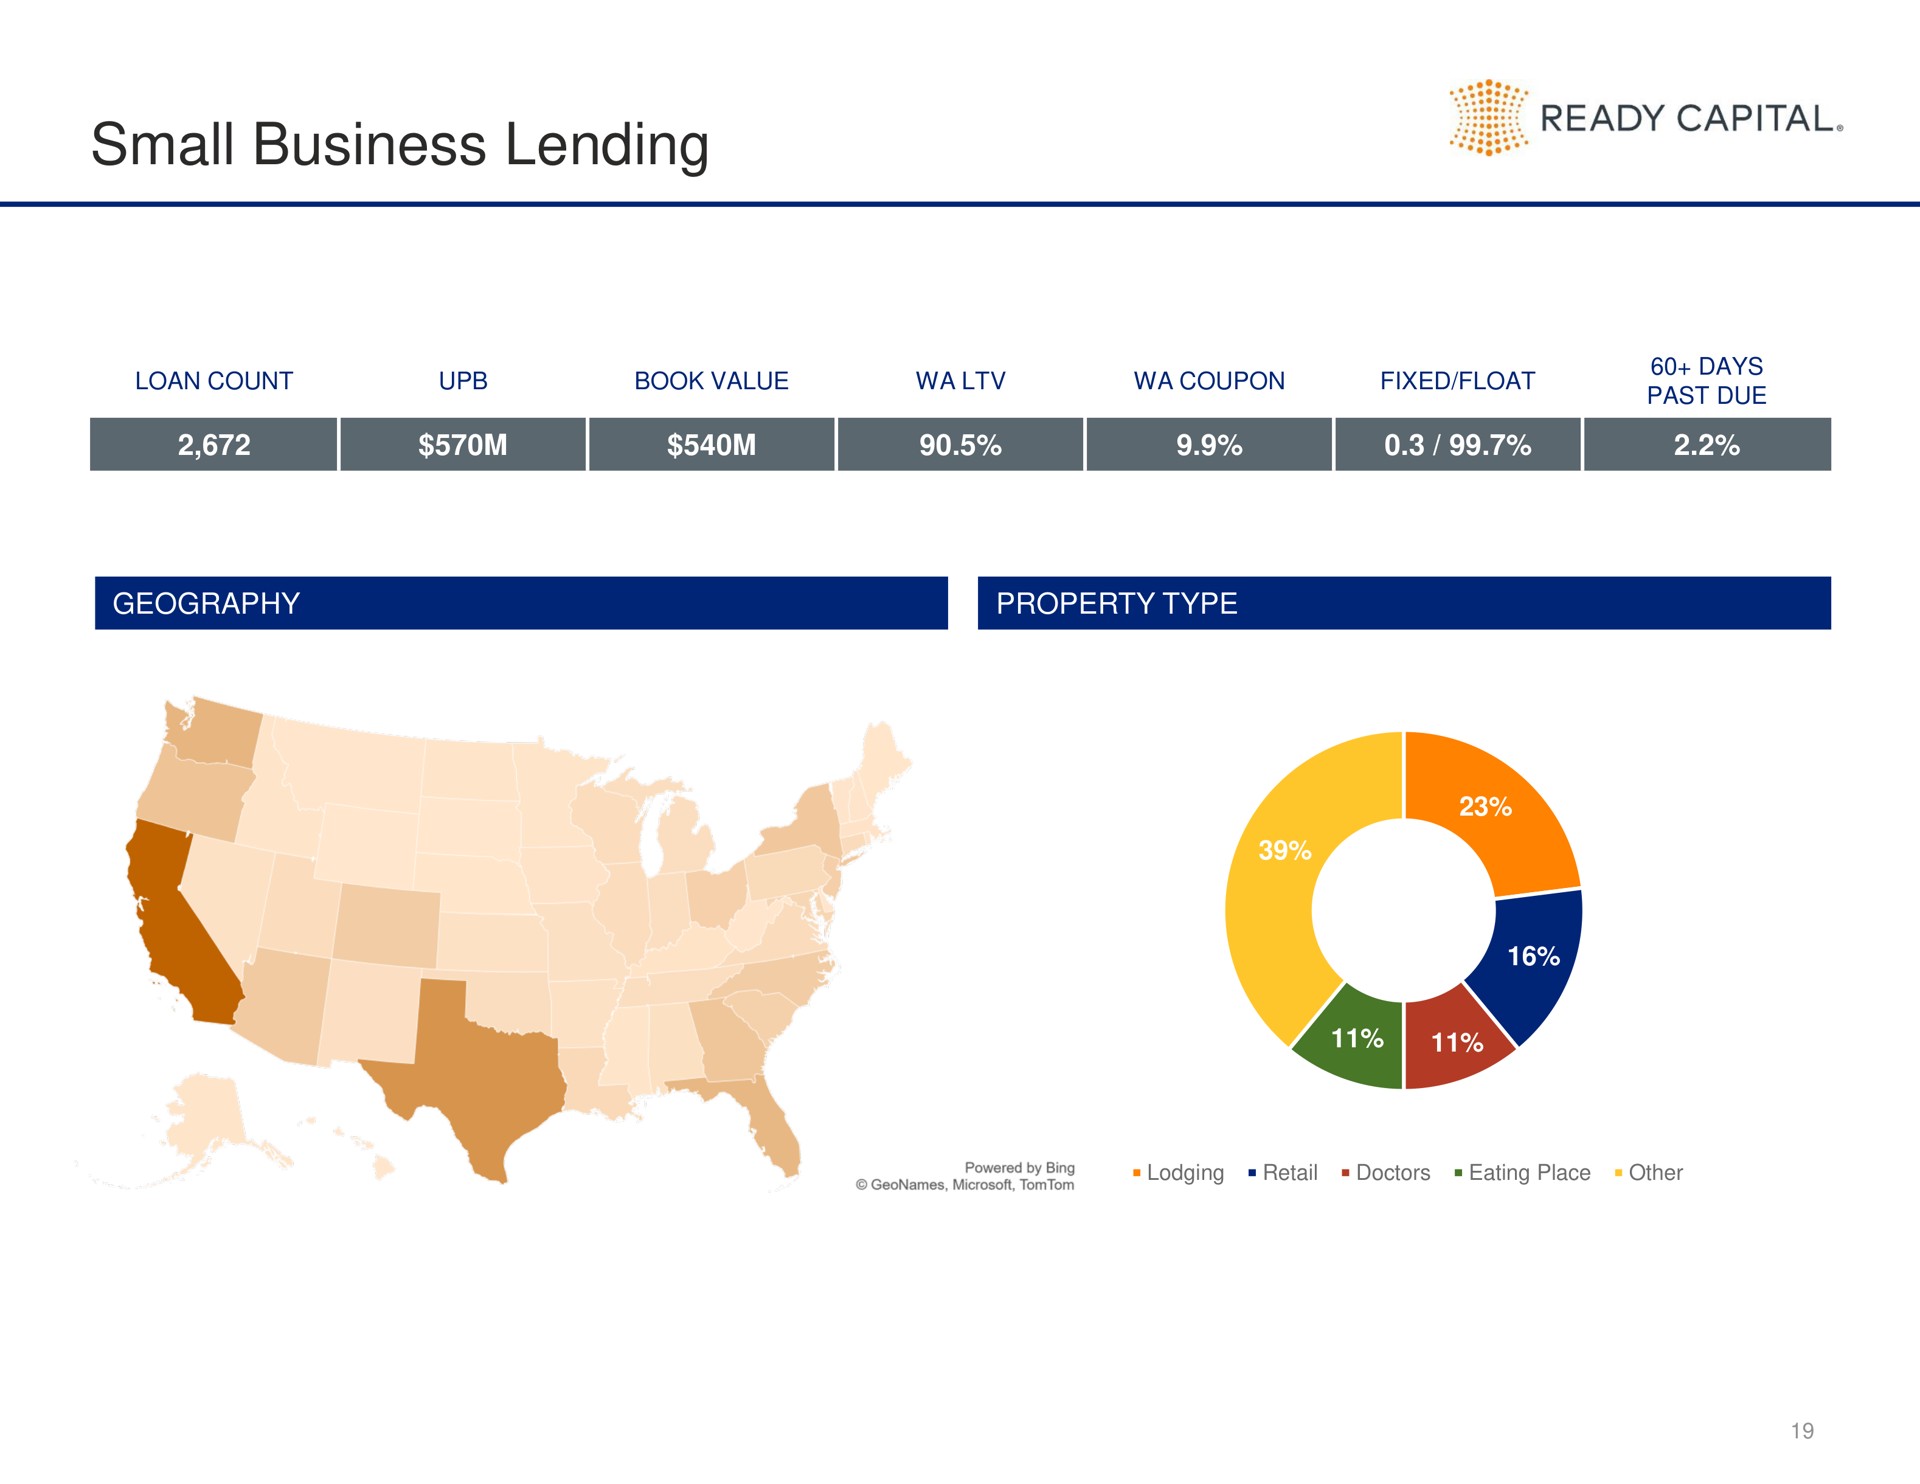 small business lending ready capital | Ready Capital